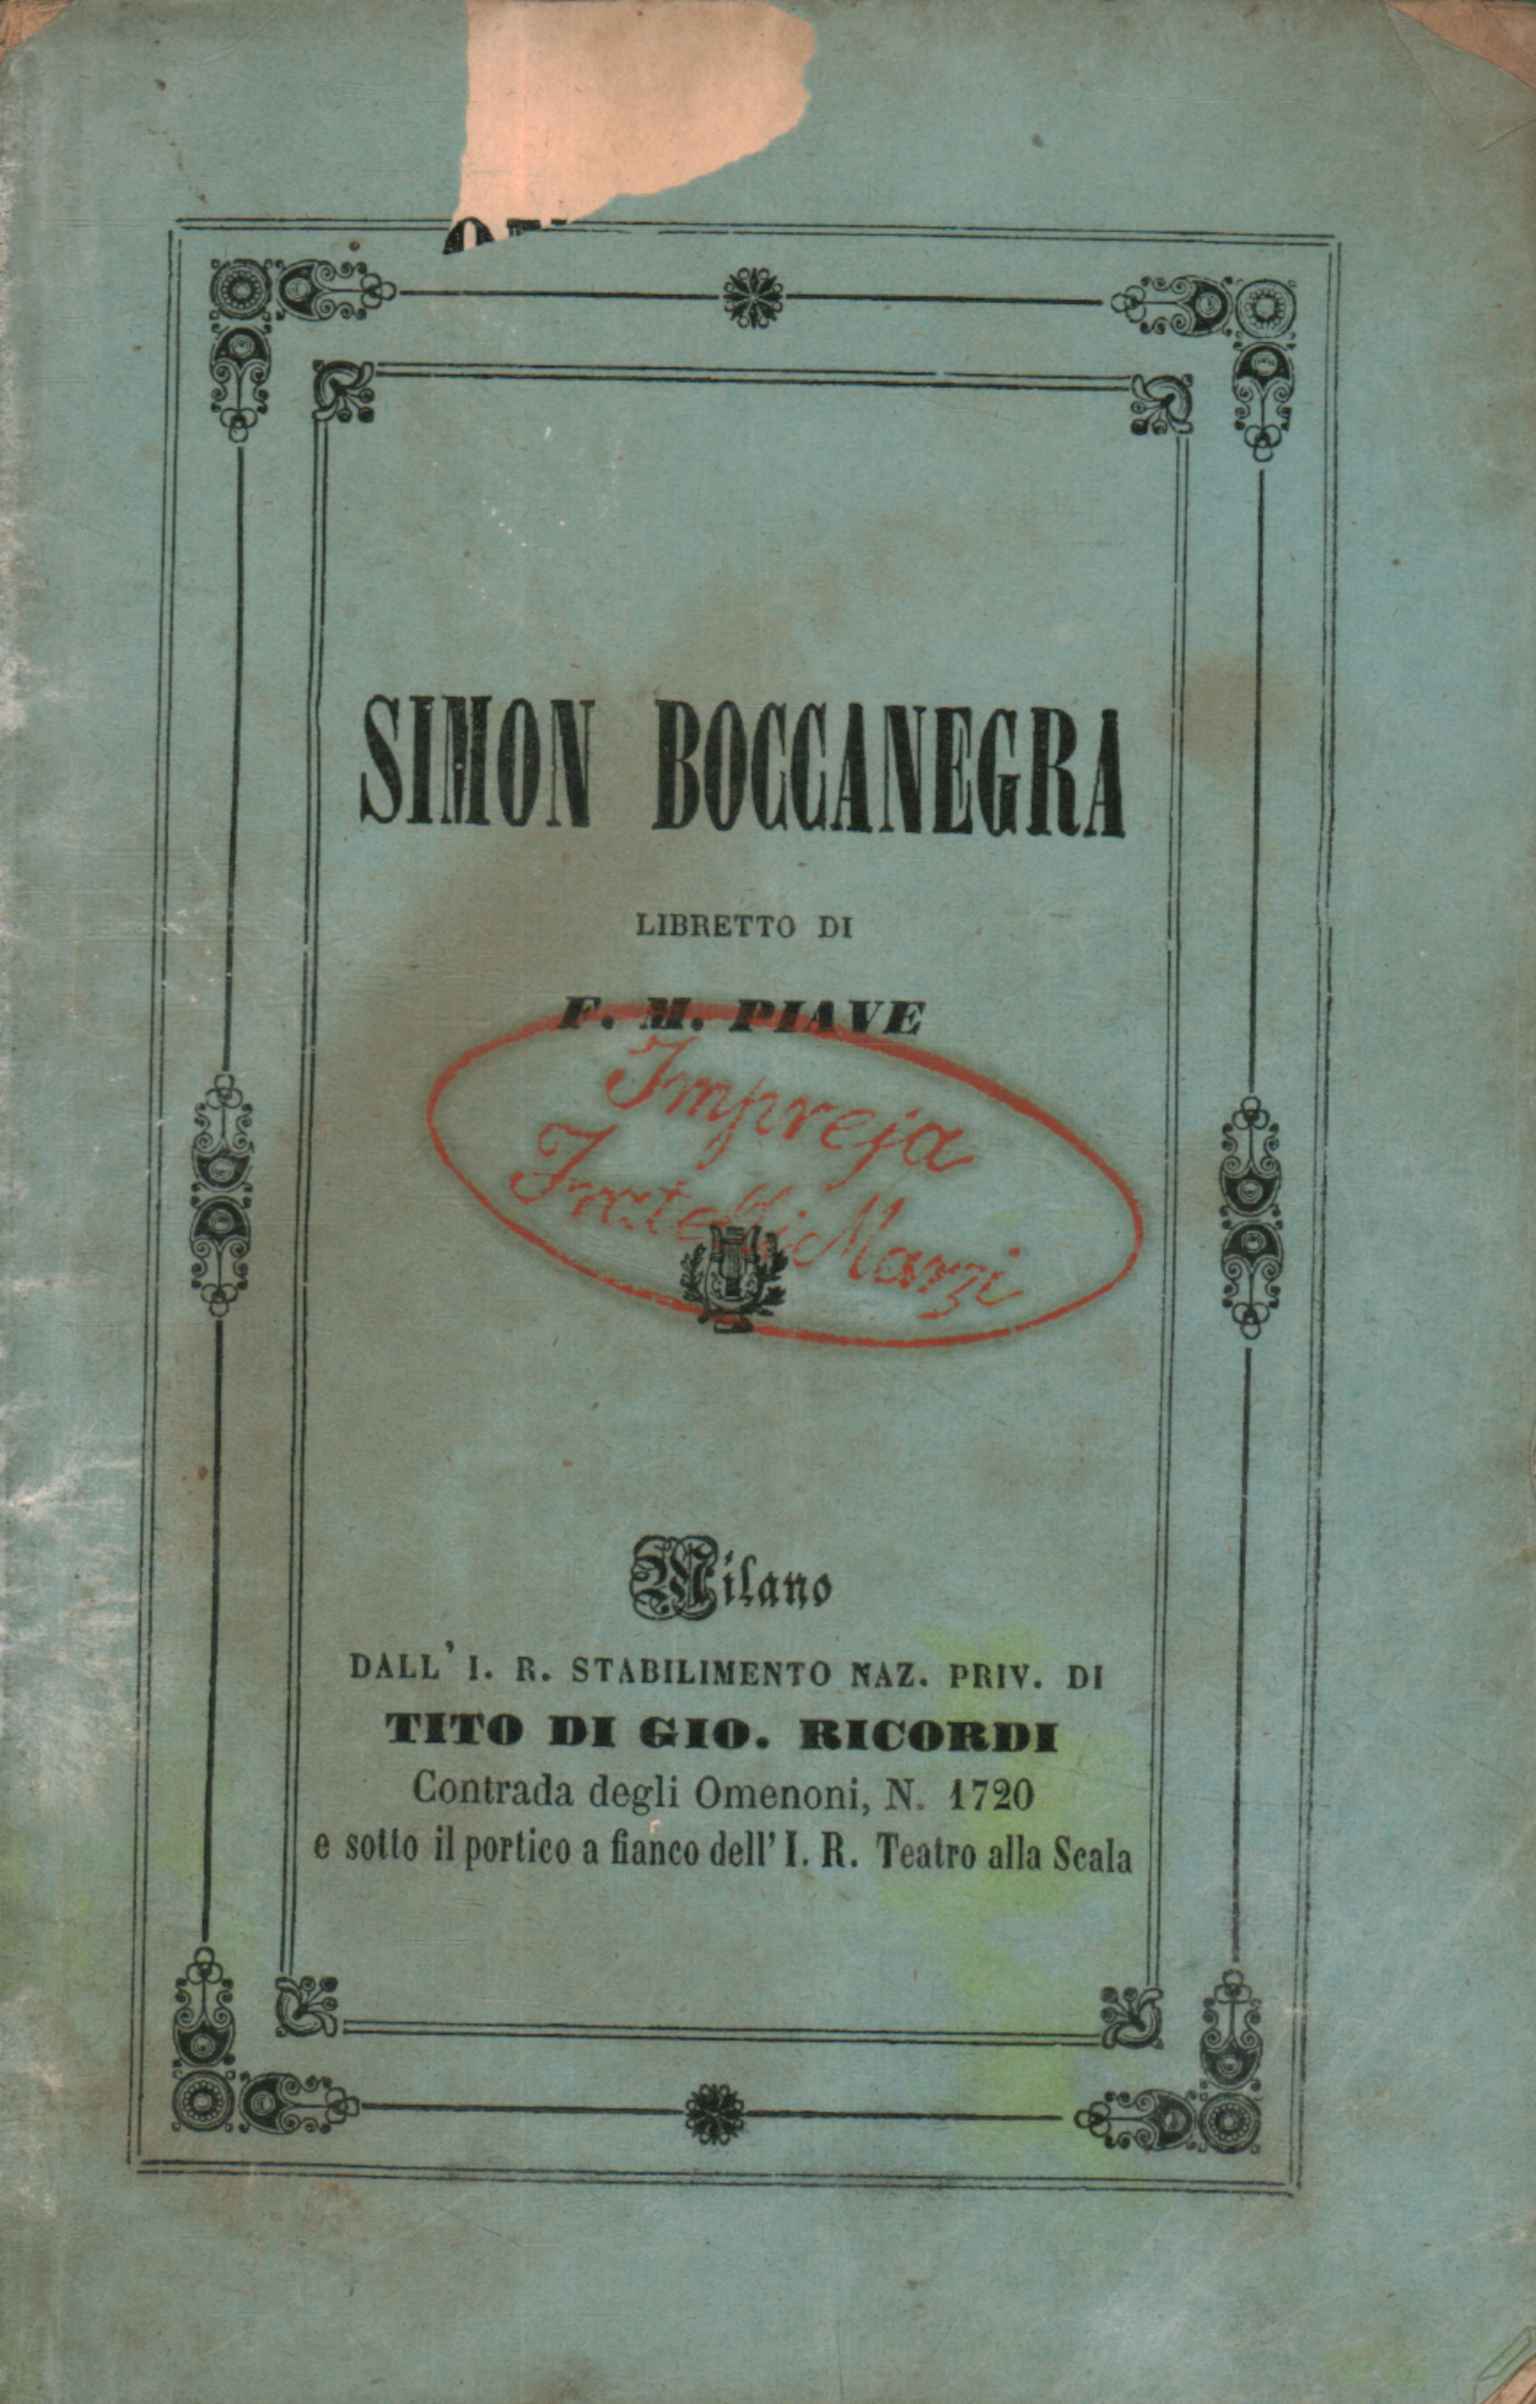 Simon Boccanegra Libretto in a Prologue%,Simon Boccanegra Libretto in a Prologue%,Simon Boccanegra Libretto in a Prologue%,Simon Boccanegra Libretto in a Prologue%